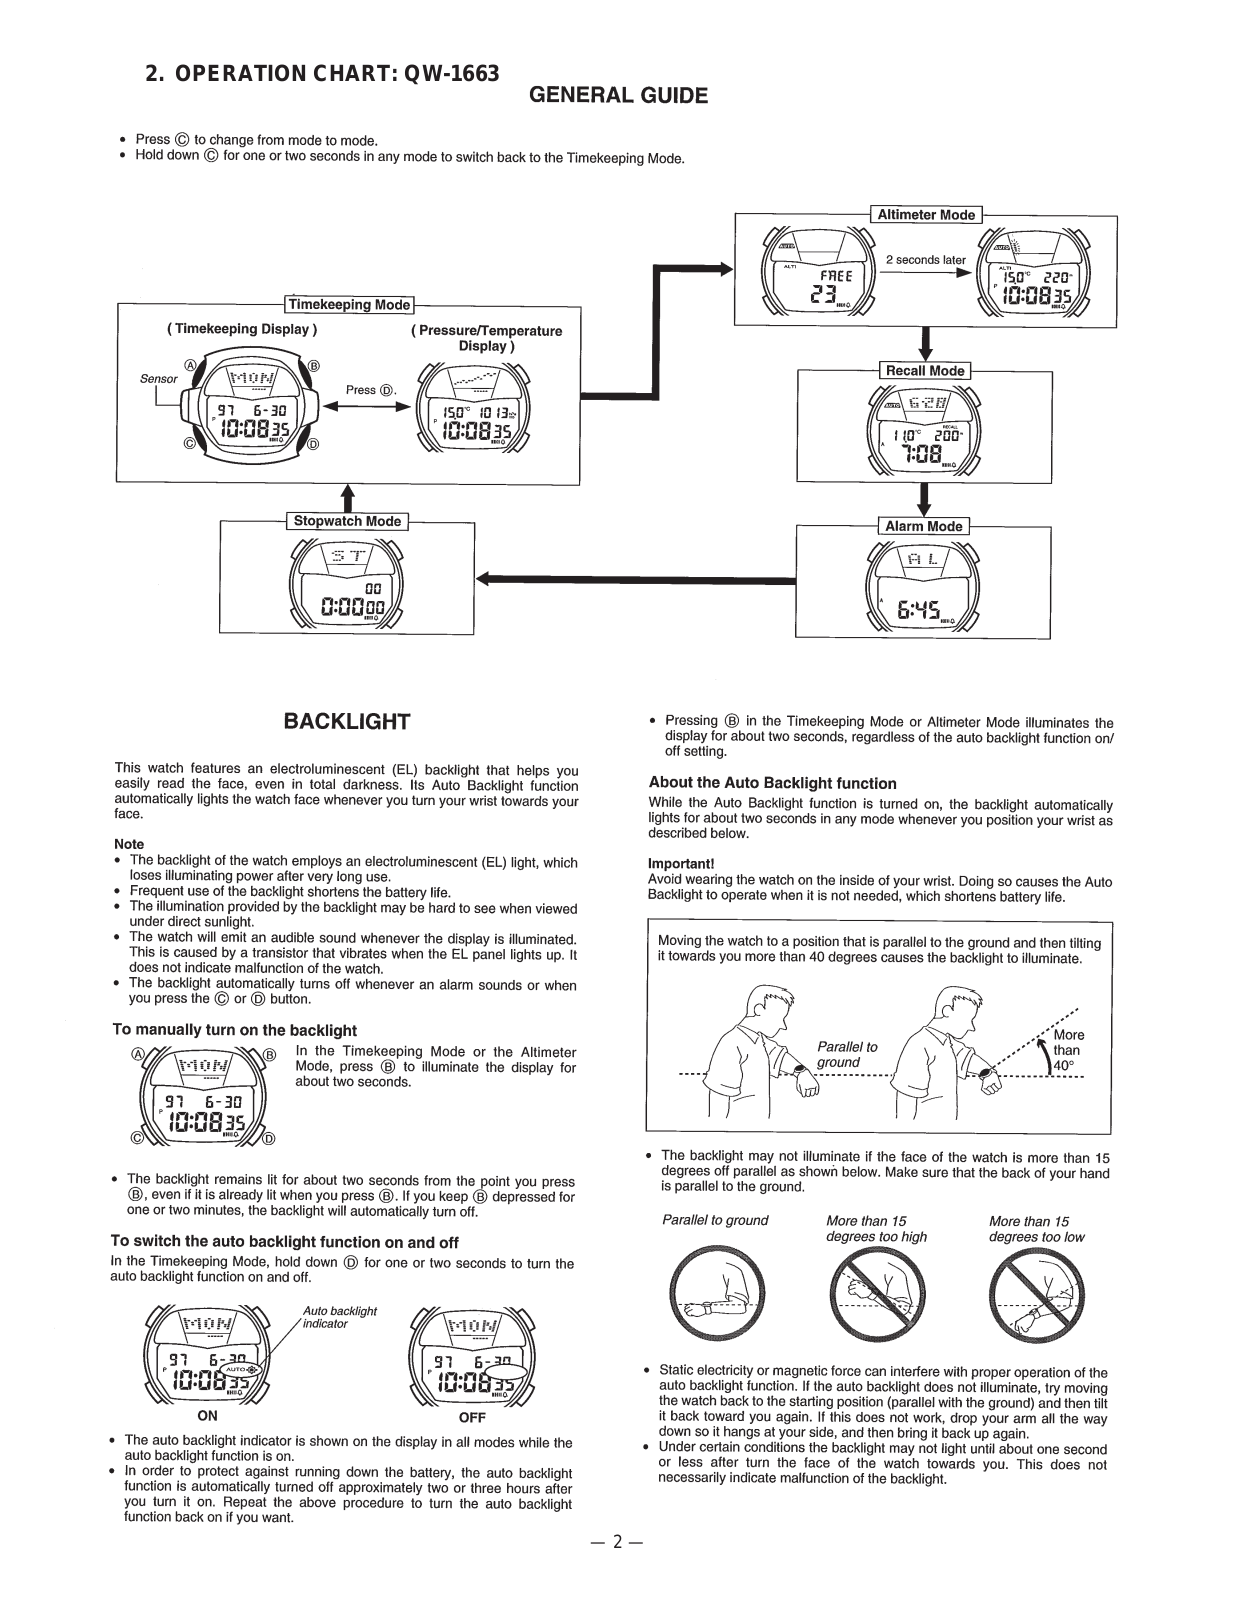 Casio 1663 Owner's Manual